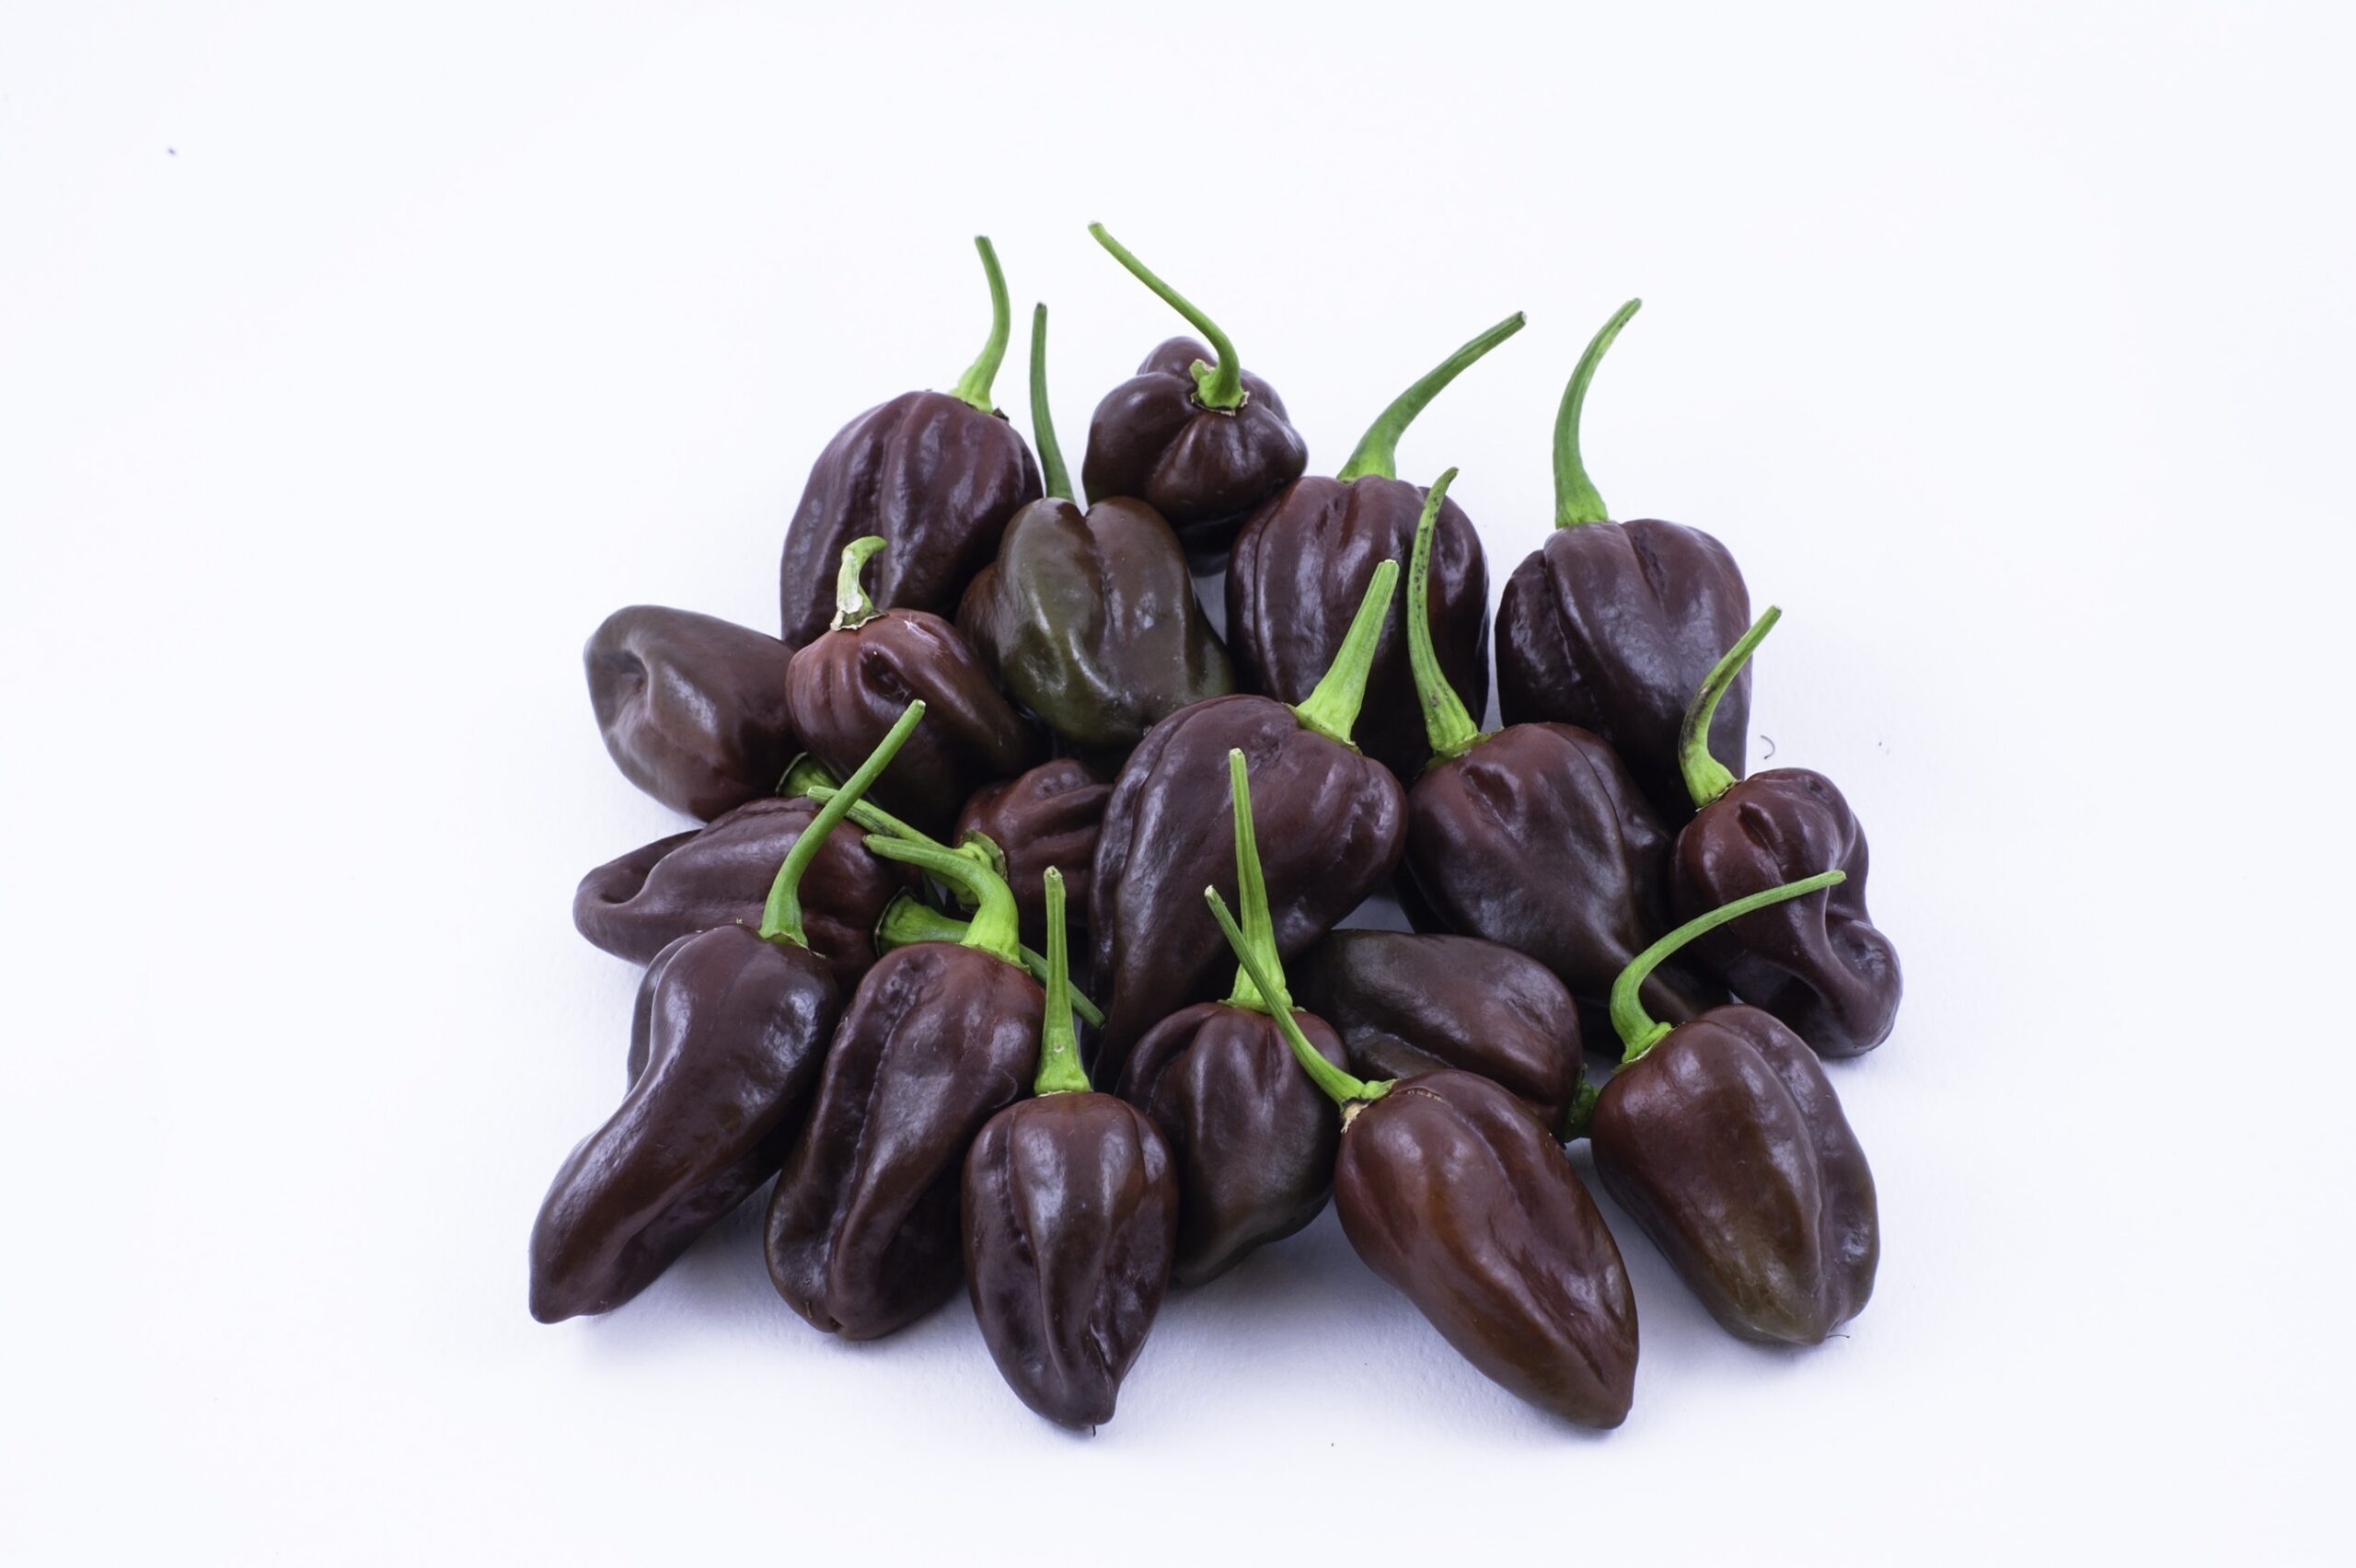 Chocolate Habanero peppers